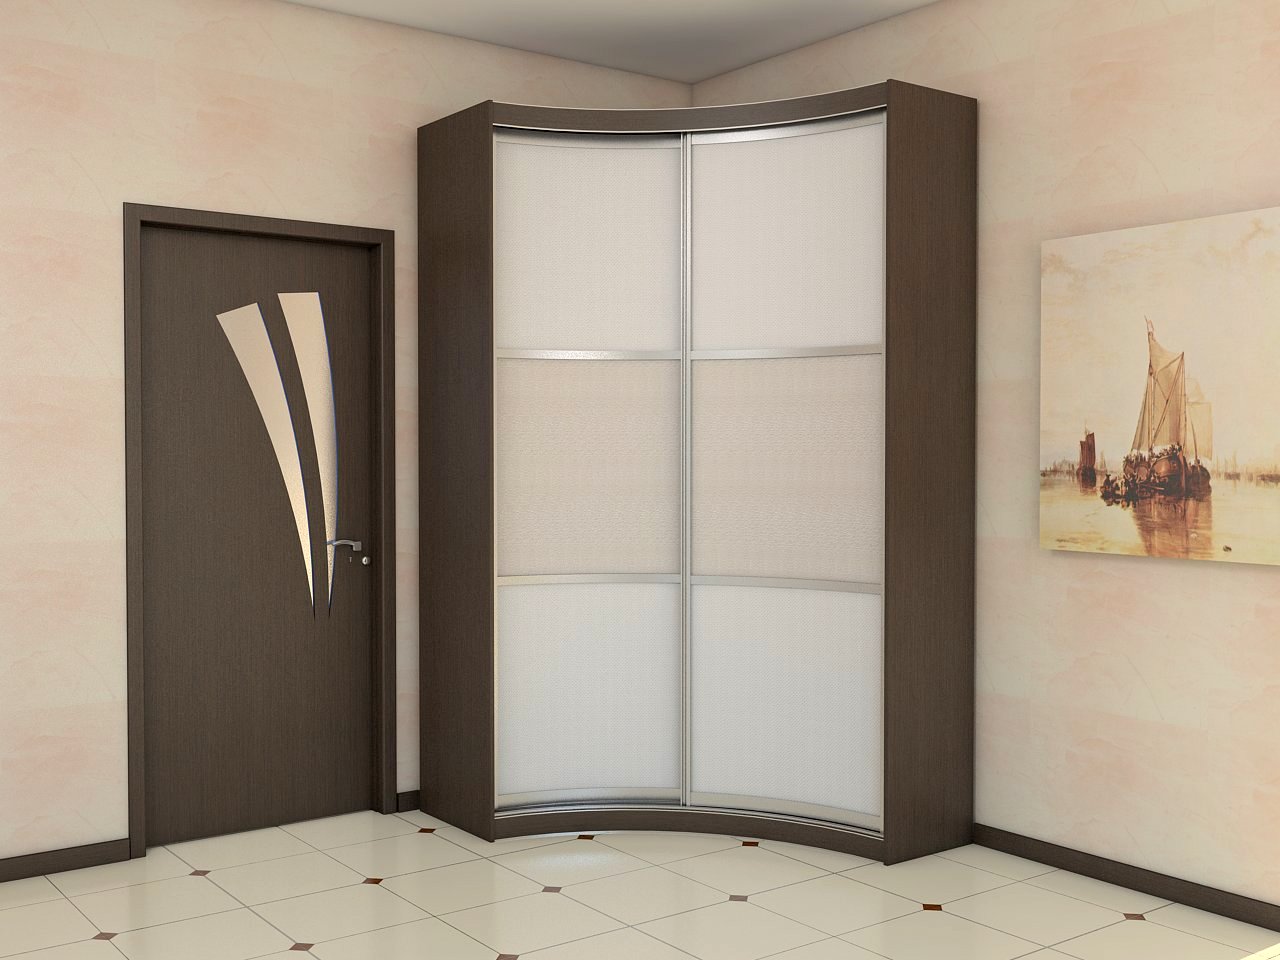 Conception de couloir avec armoire d'angle